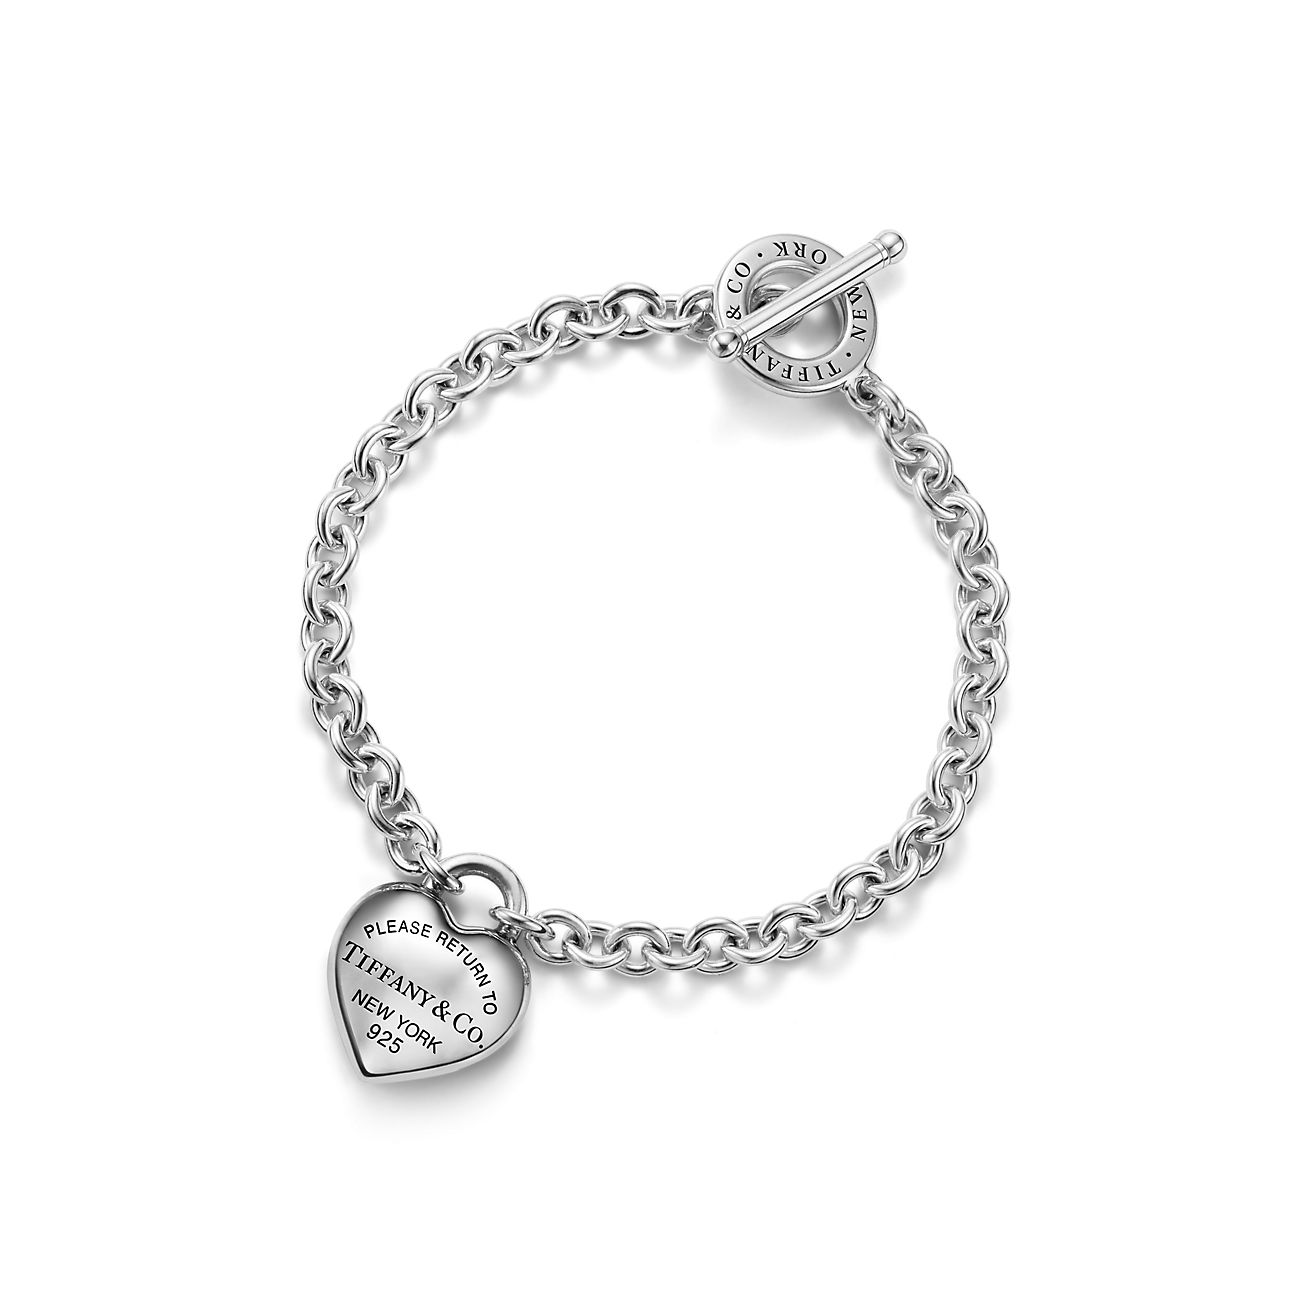 Bracelet Full Heart Return to Tiffany avec fermoir à bascule en argent - Size Extra Small Tiffany & Co.